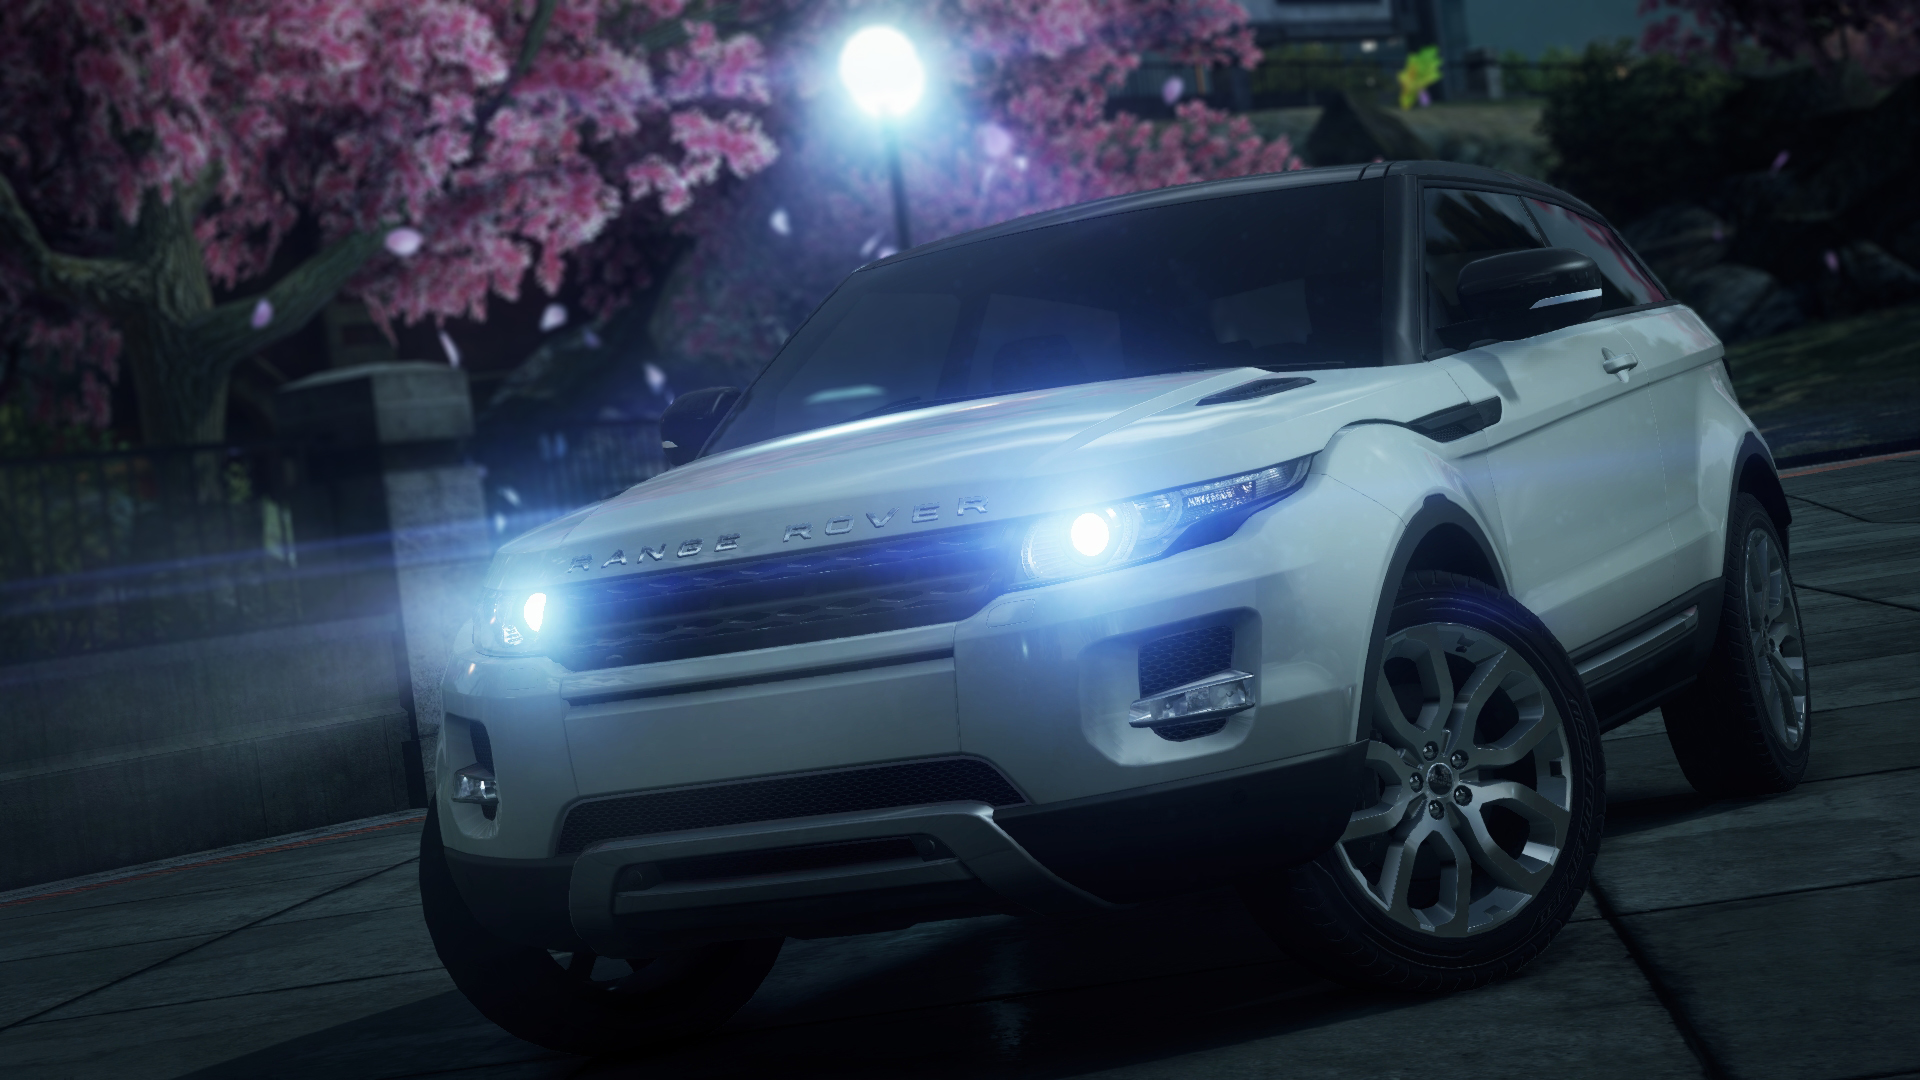 Range Rover Evoque Need For Speed Wiki Fandom